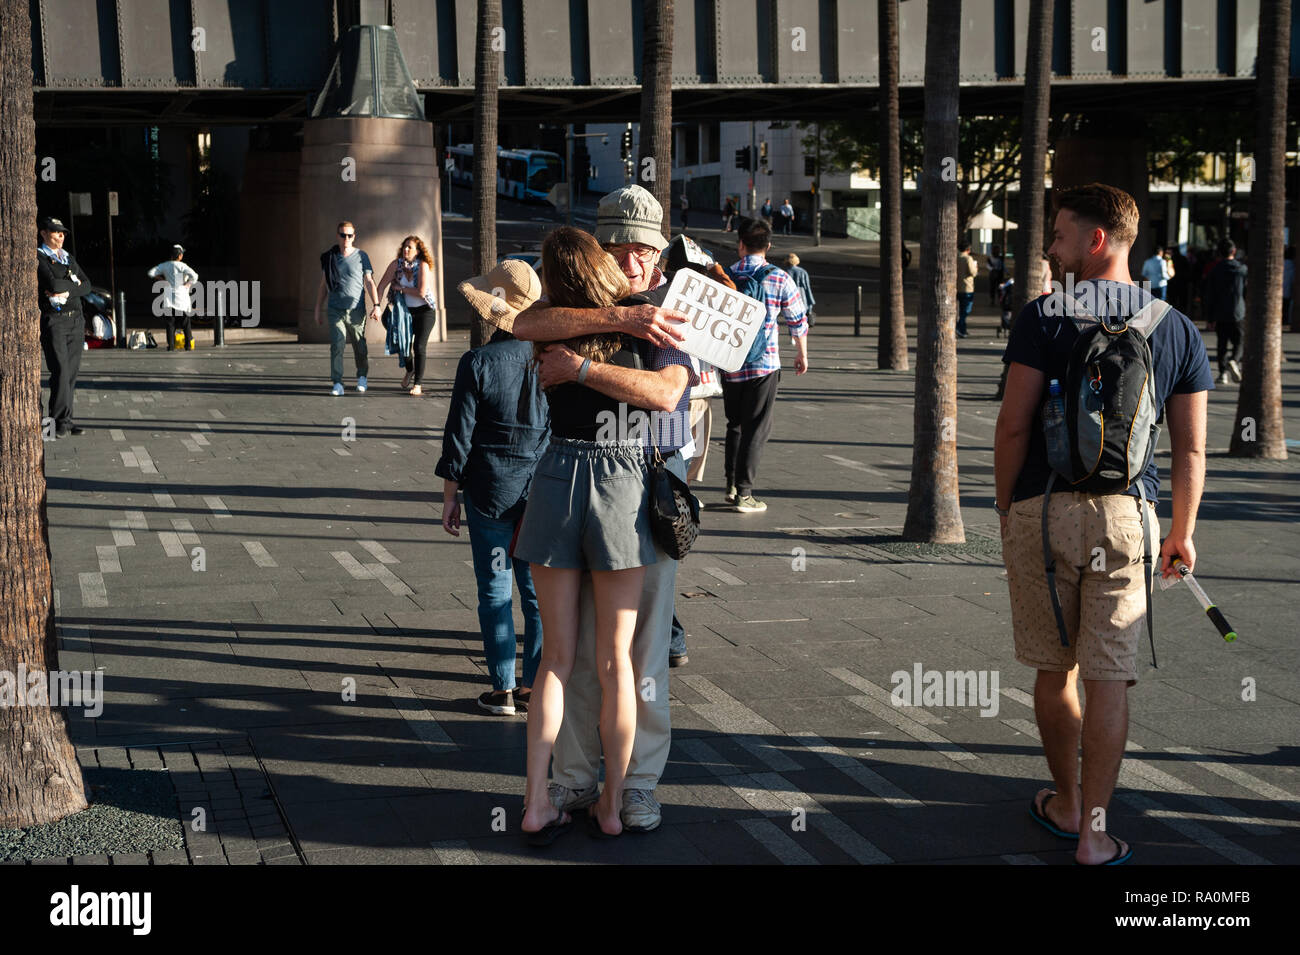 06.05.2018, Sydney, New South Wales, Australien - Ein Mann, der am Circular Quay Gratisumarmungen anbietet, nimmt eine junge Frau in die Arme. 0SL1805 Stock Photo